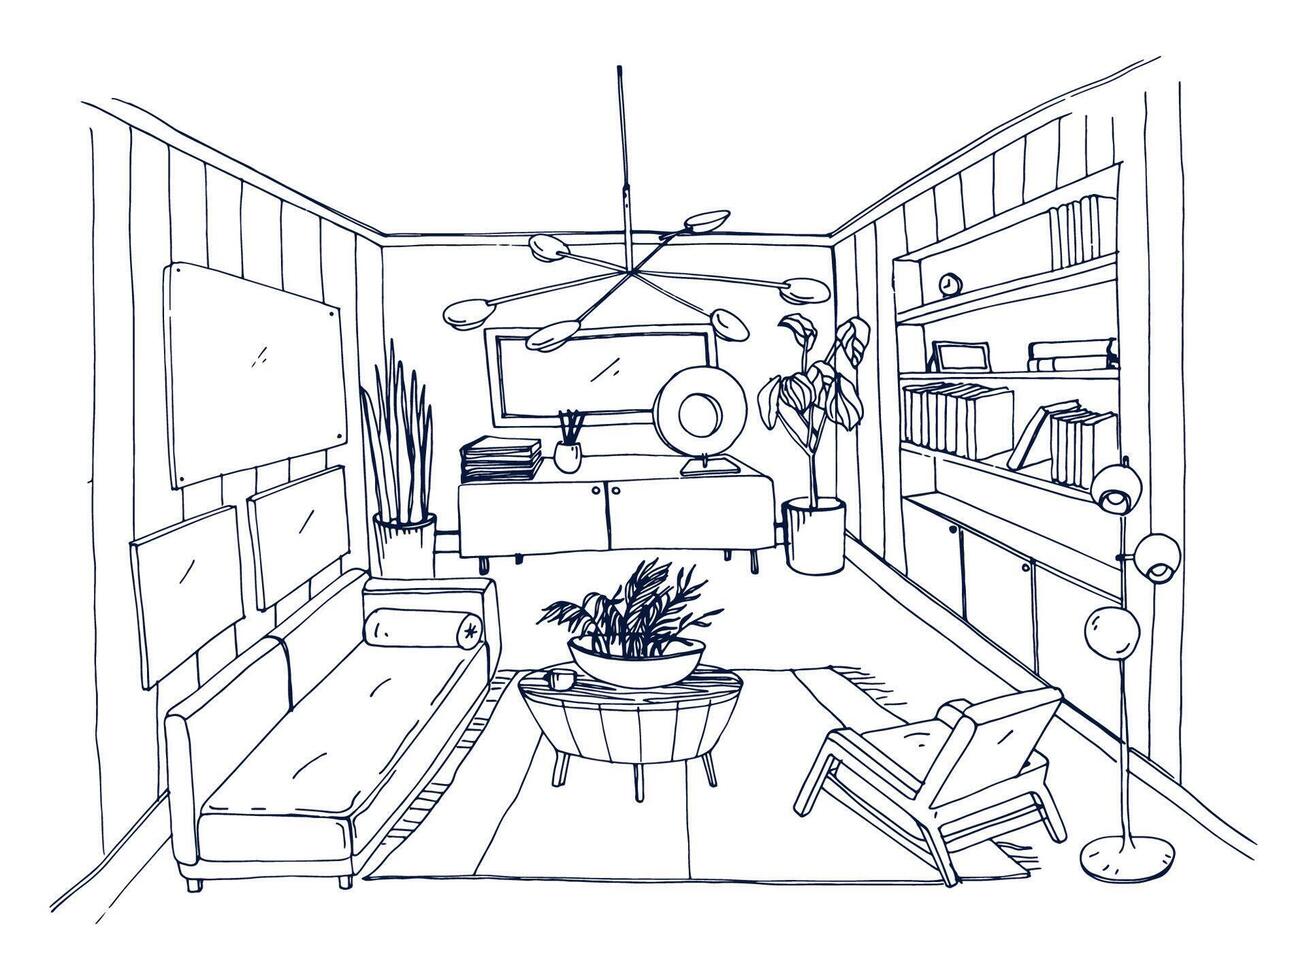 skiss av eleganta levande rum full av inredning hand dragen med kontur rader. svartvit teckning av lägenhet möblerad i scandinavian stil. modern Hem interiör design. vektor illustration.